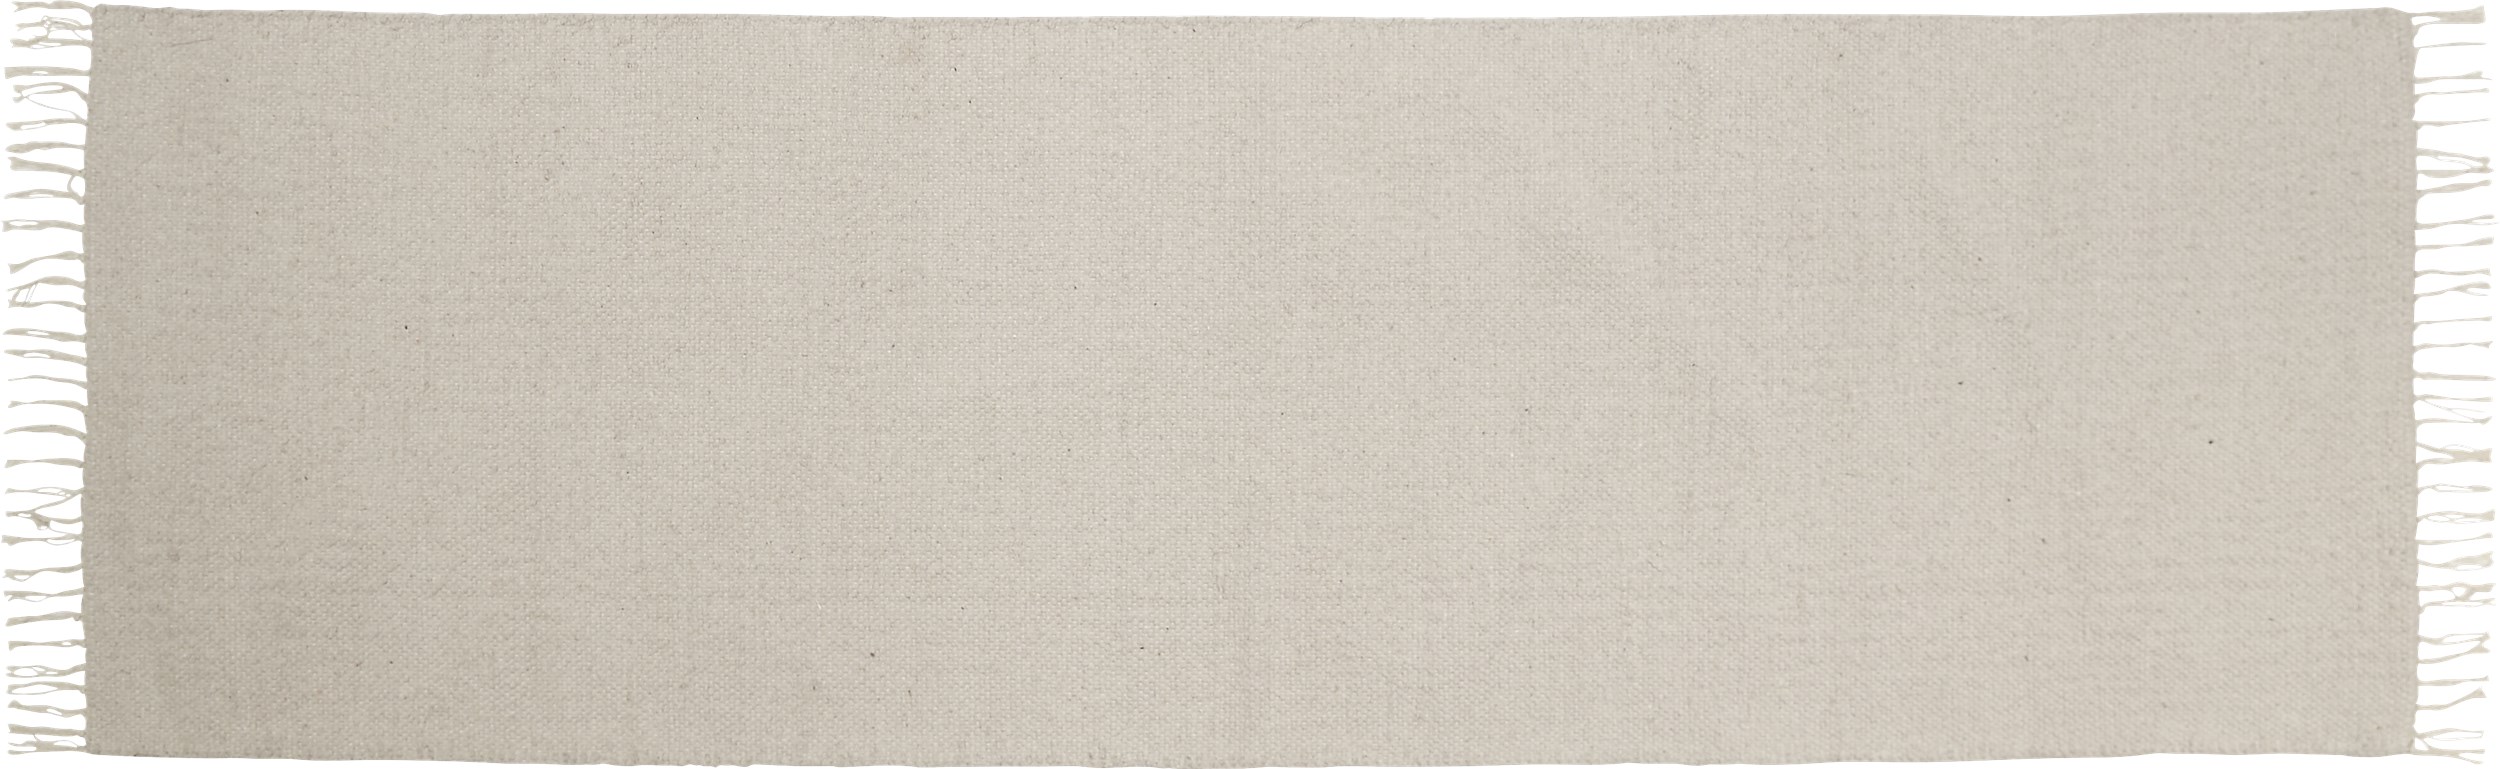 Joye Gångmatta 80 x 250 cm - Off-white bomull